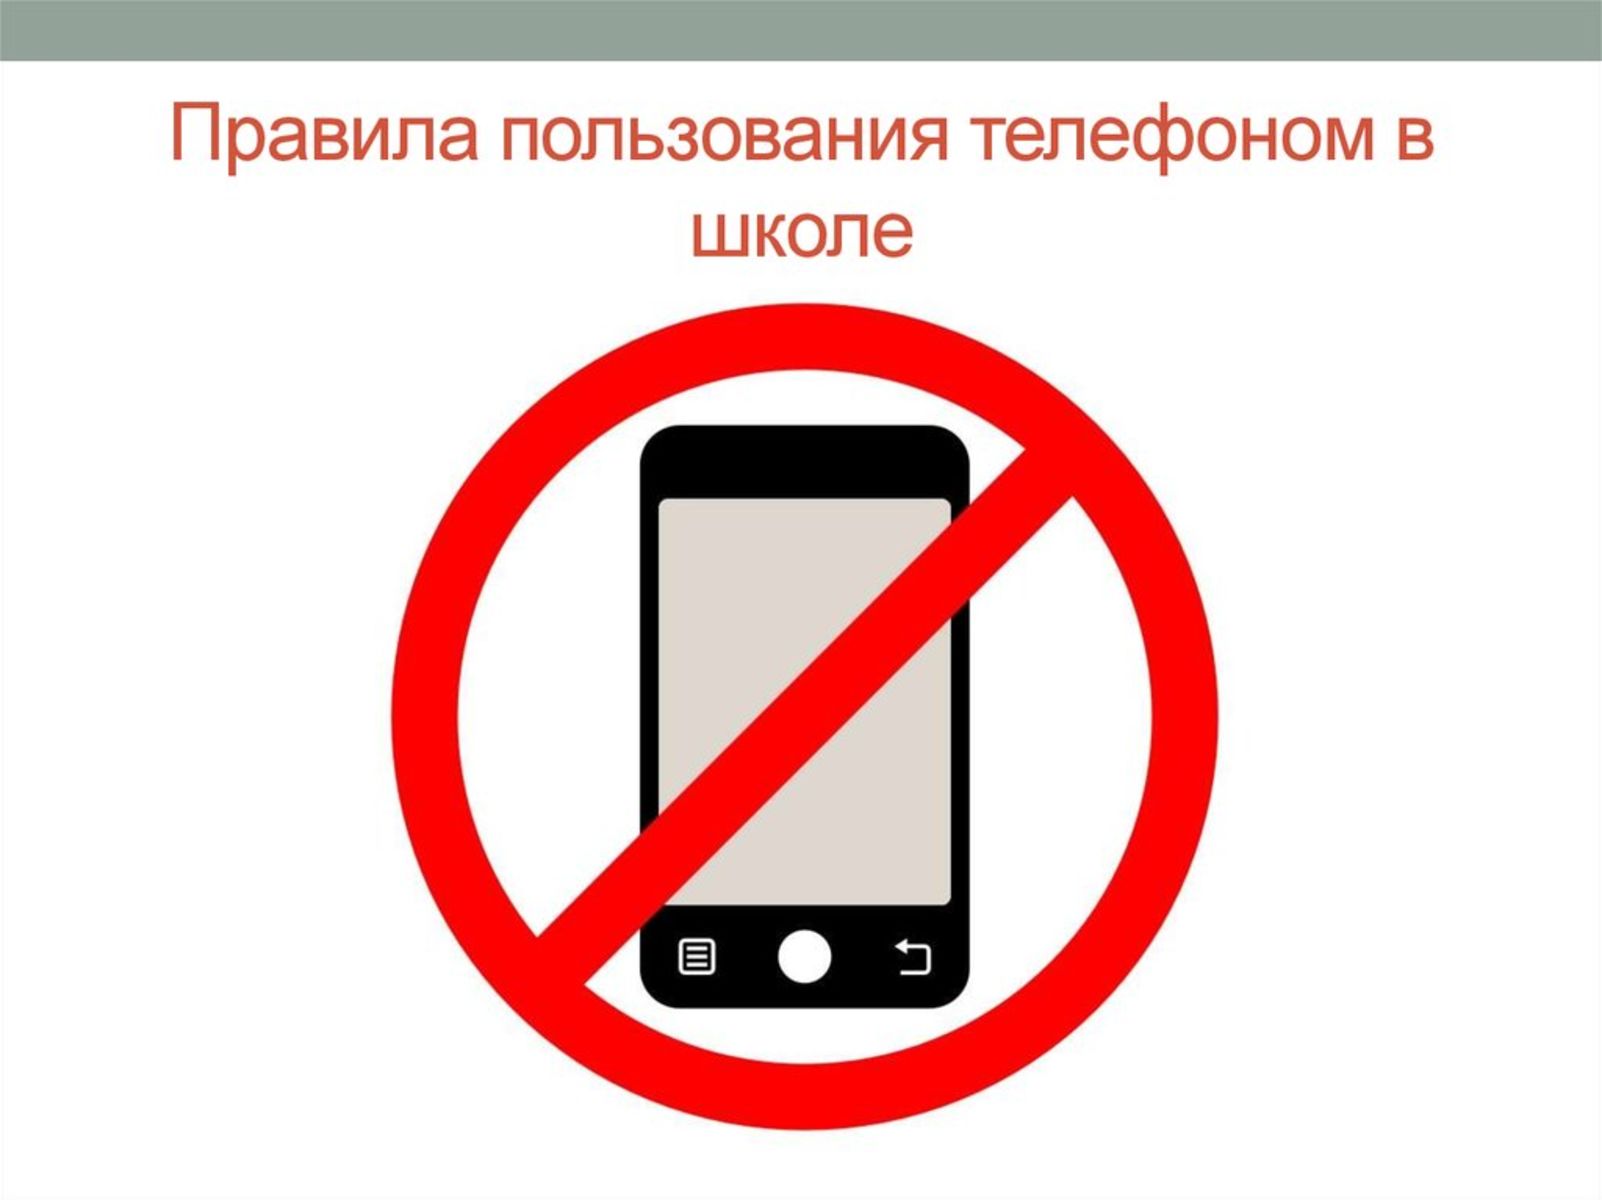 Школа мобильной связи. Запрет на пользование телефоном. Запреи использования мобиль. Правила пользования телефоном в школе. Использование телефона в школе запрещено.